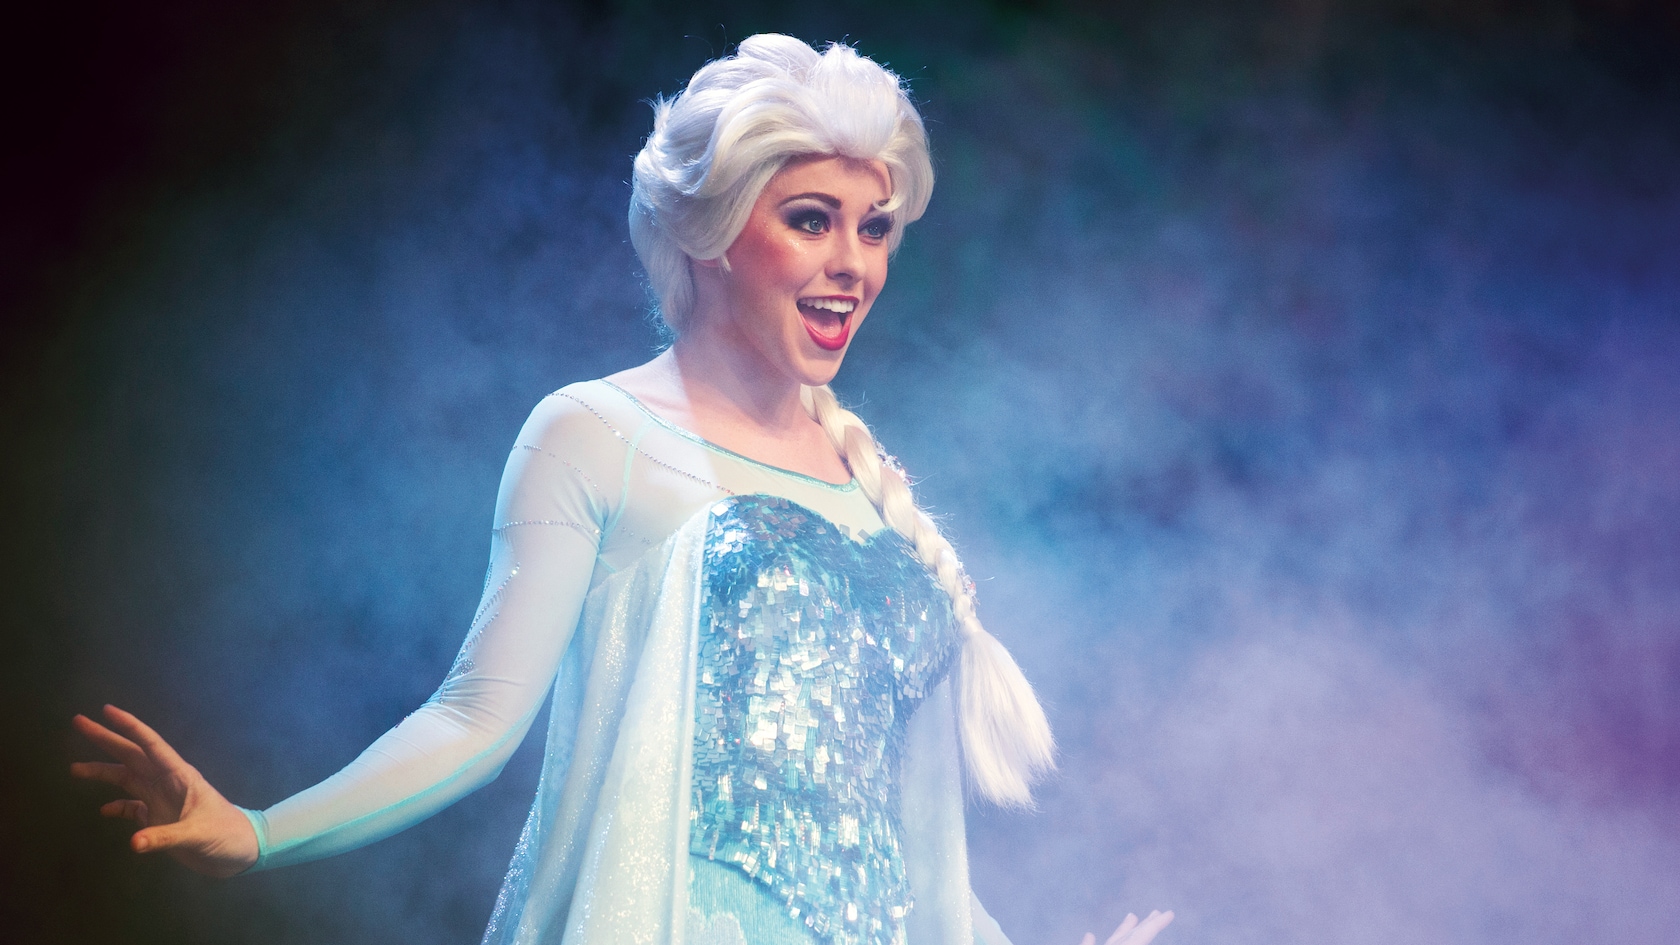 Atração inspirada em “Frozen” fechará para reforma em Orlando